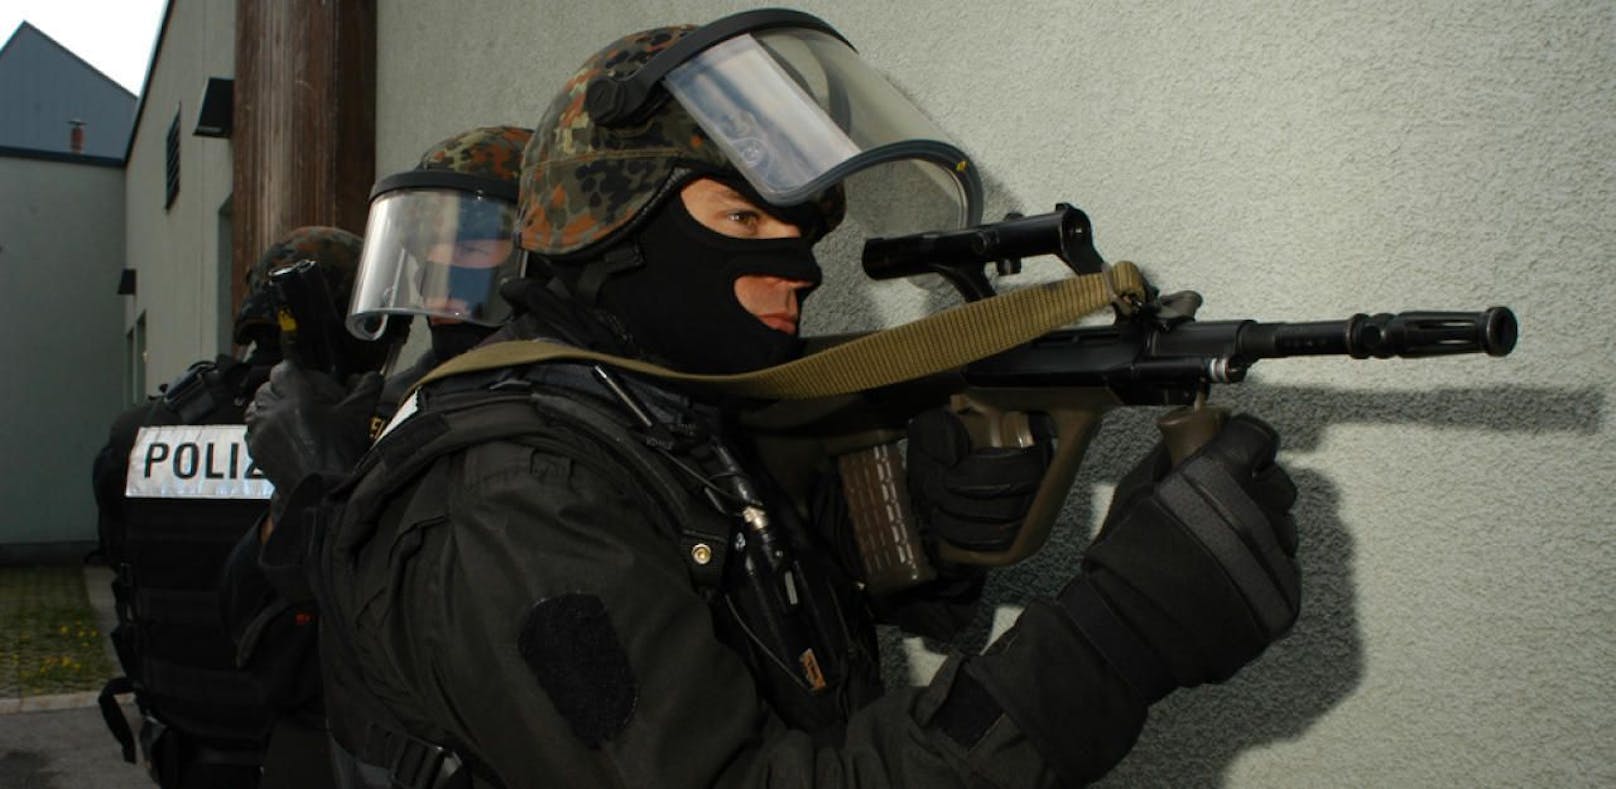 Wegen der anhaltenden Terrorgefahr verschärfte Innenminister Sobotka diese Woche die Sicherheitsvorkehrungen; Symbolfoto